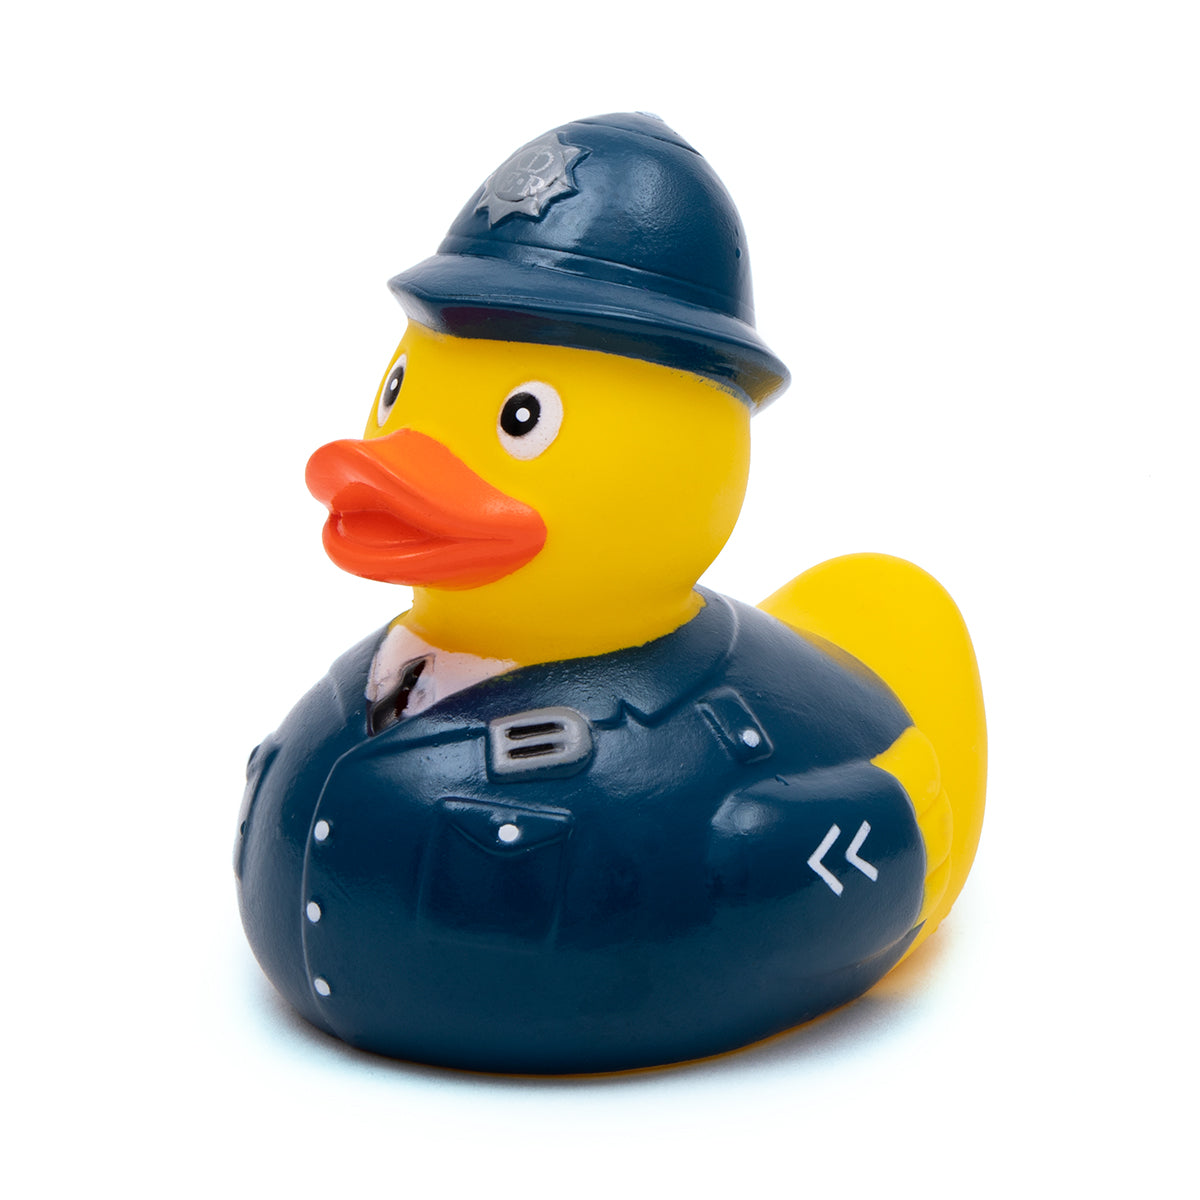 Police Officer - London Rubber Ducks